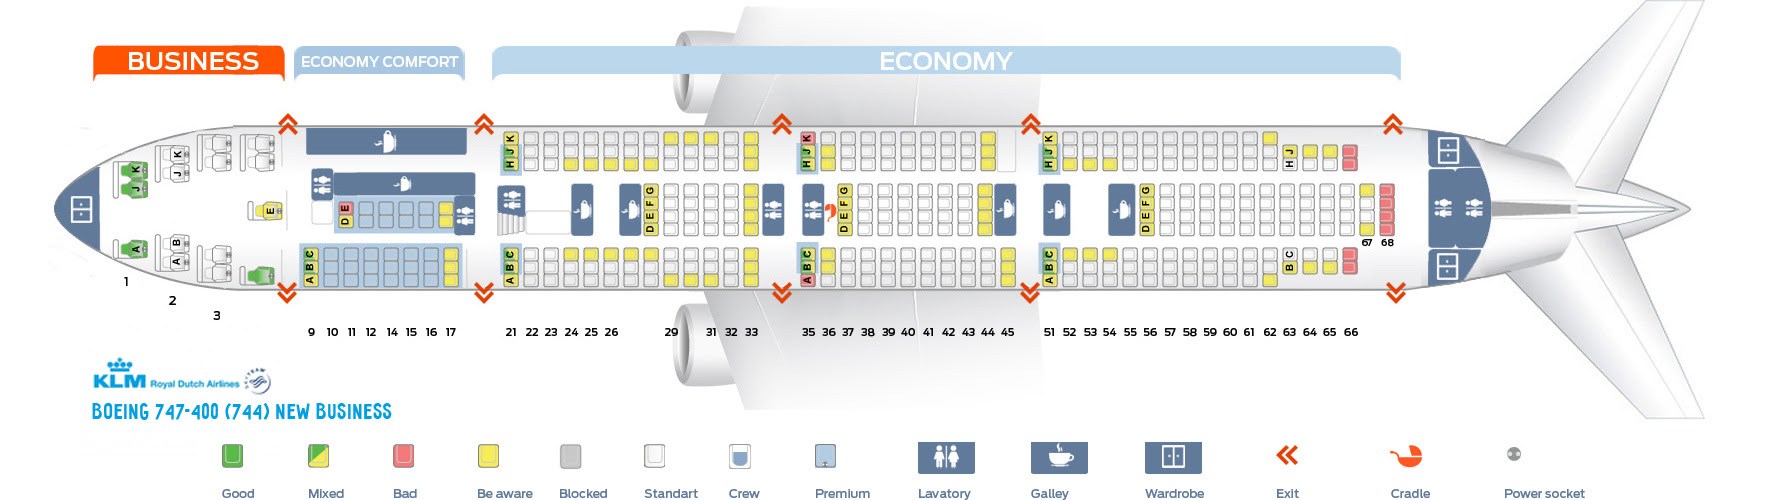 British Airways 744 Seat Map